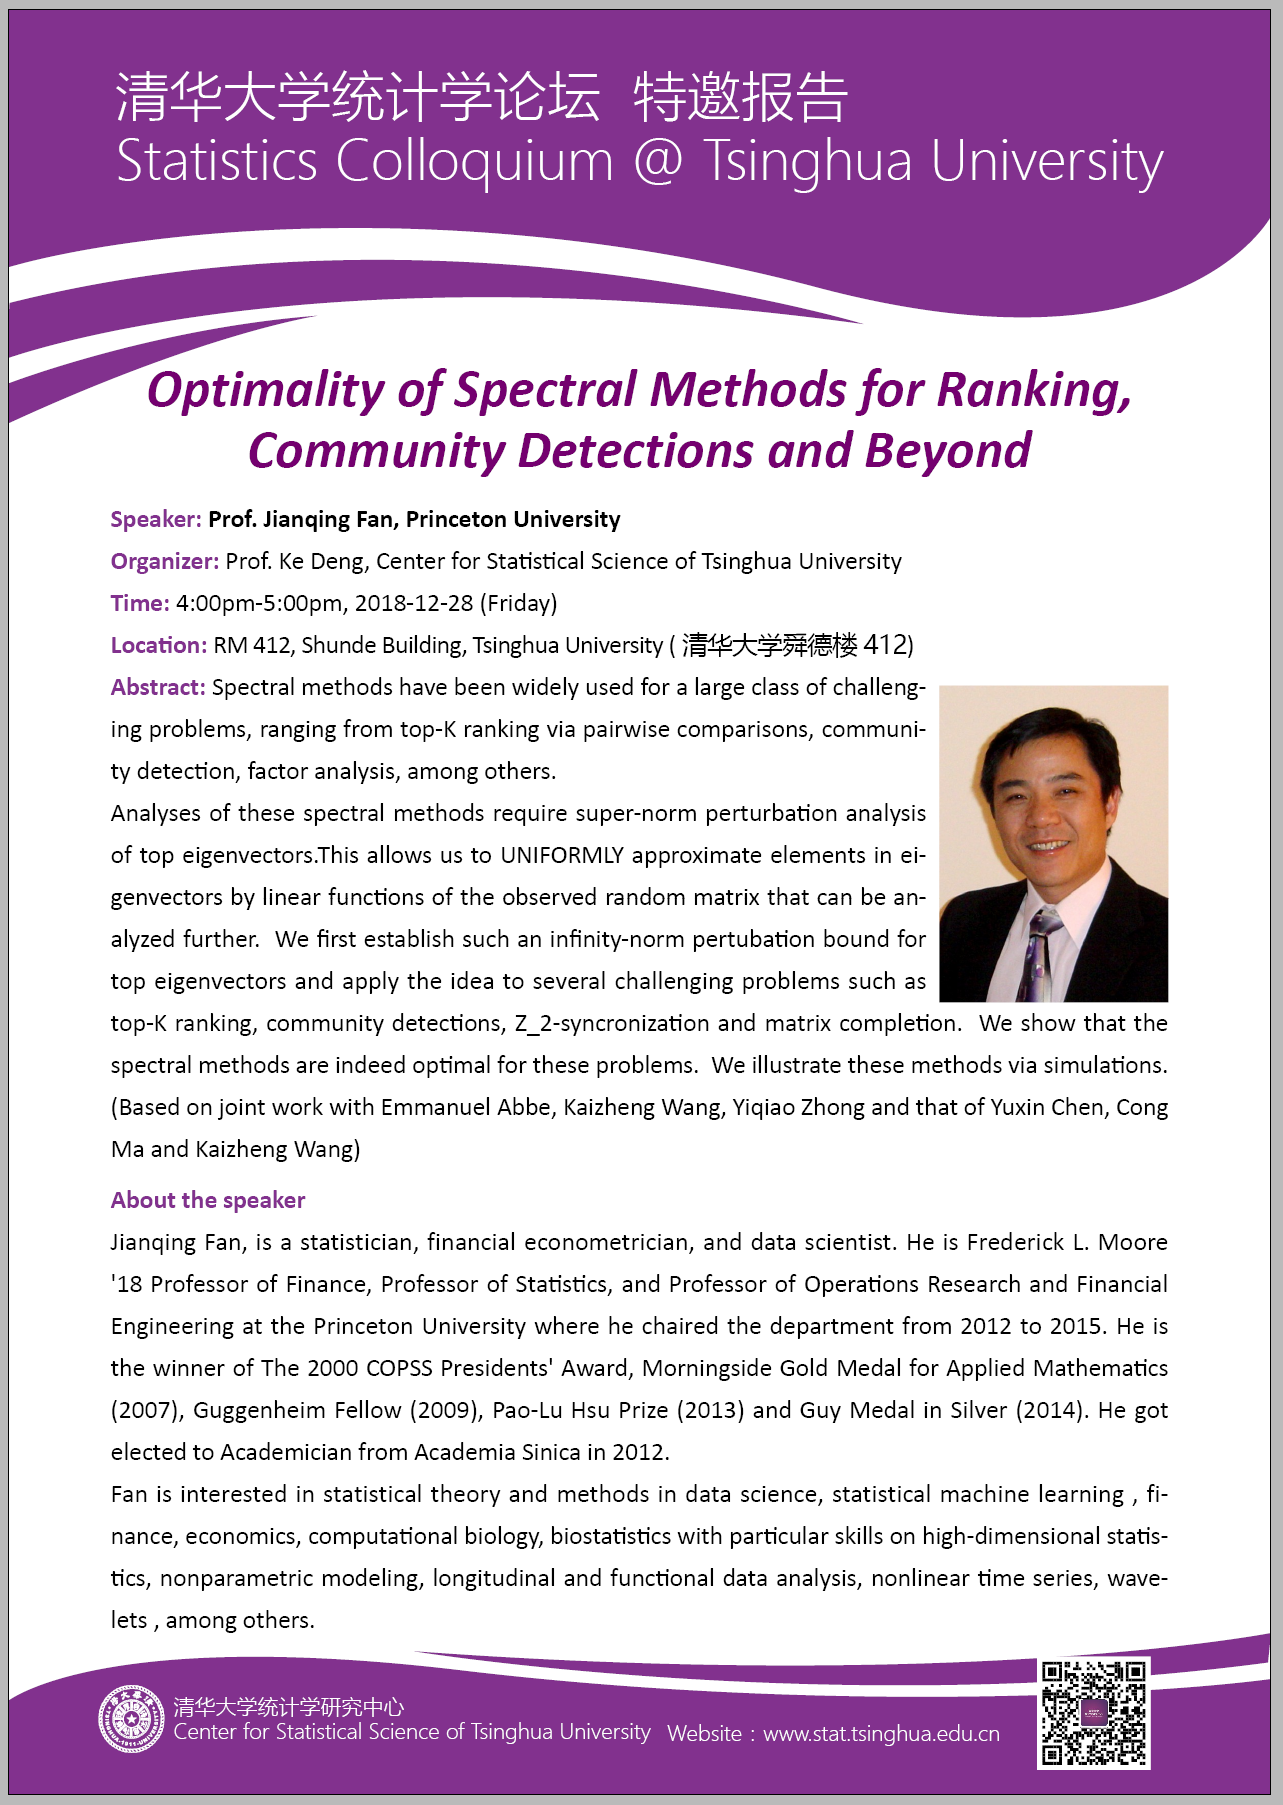 【统计学论坛】Optimality of Spectral Methods for Ranking, Community Detections and Beyond